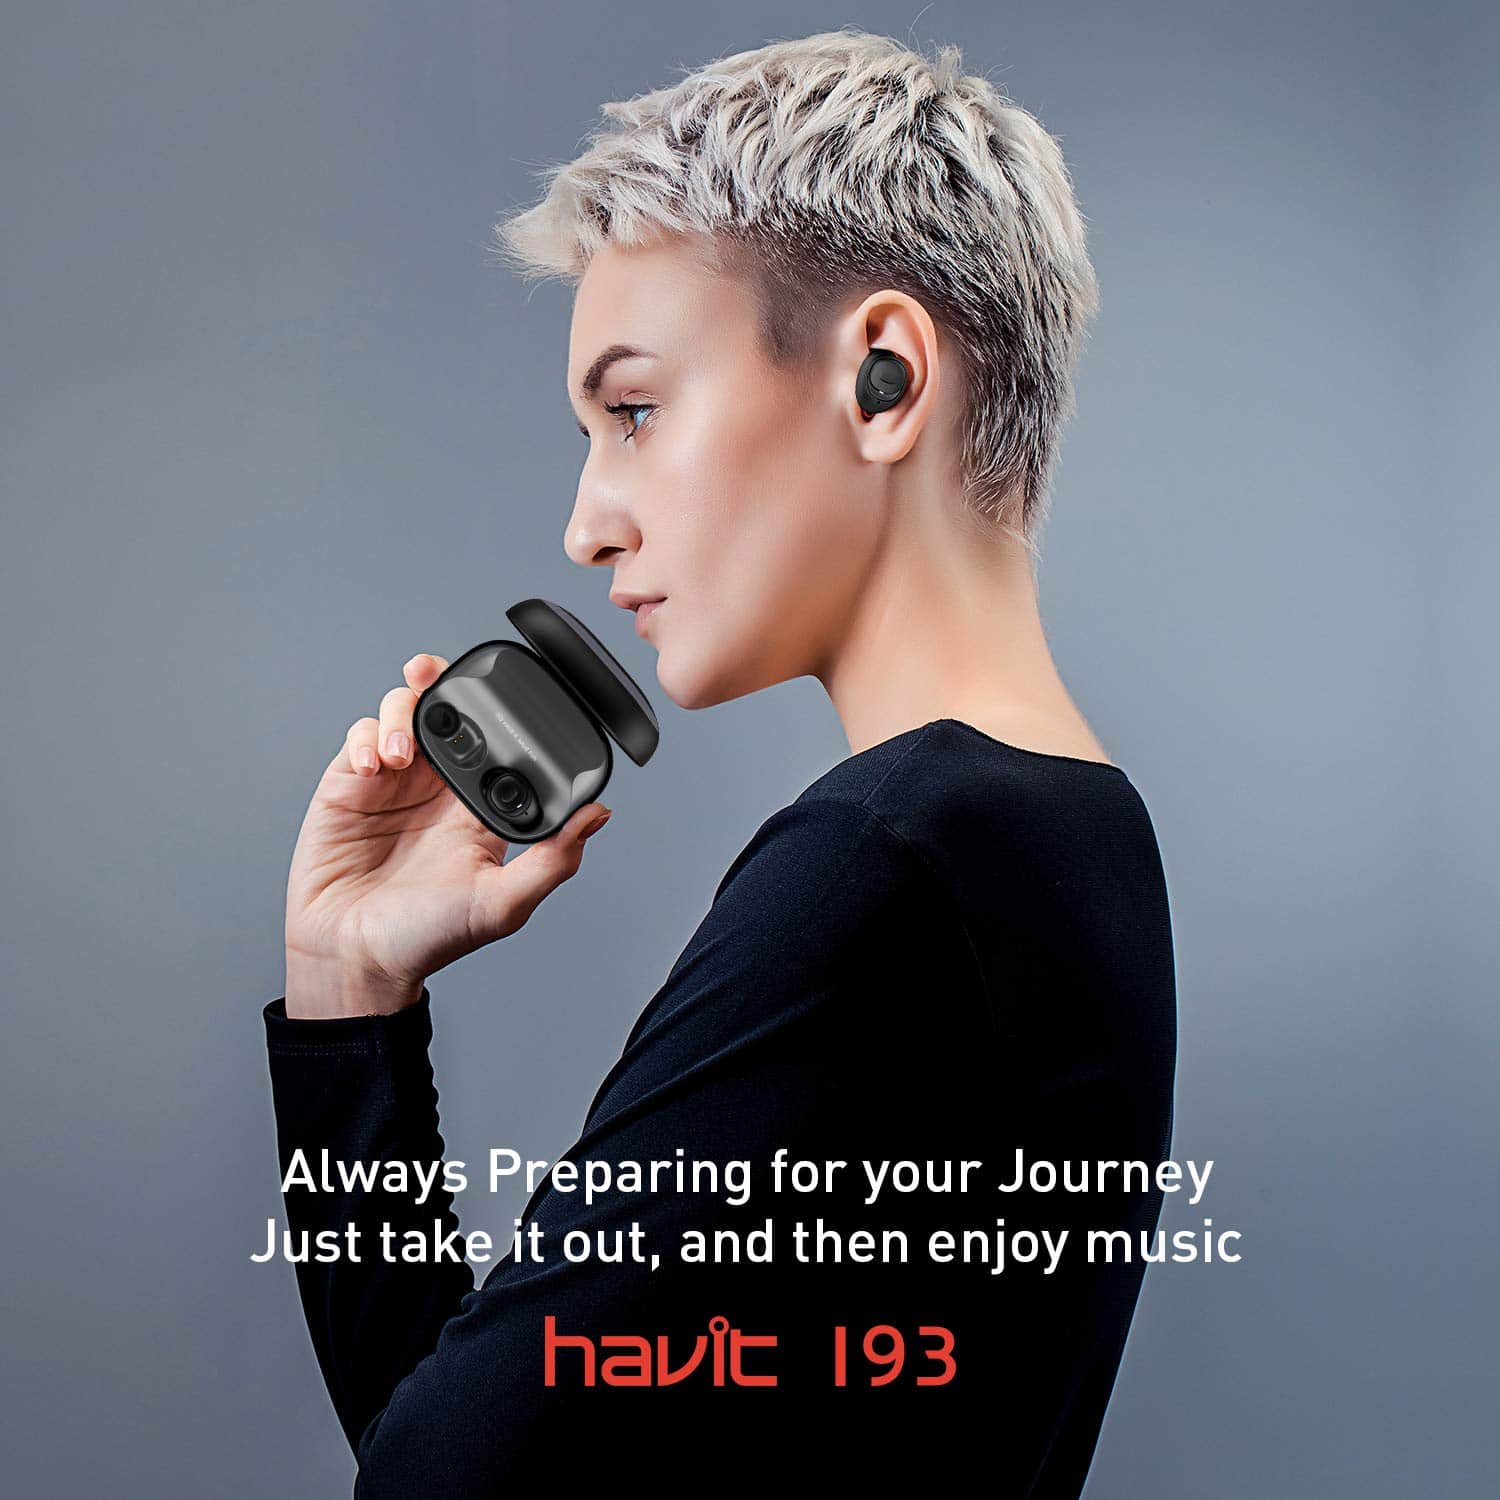 HAVIT I93 TWS Truly Wireless Earbuds